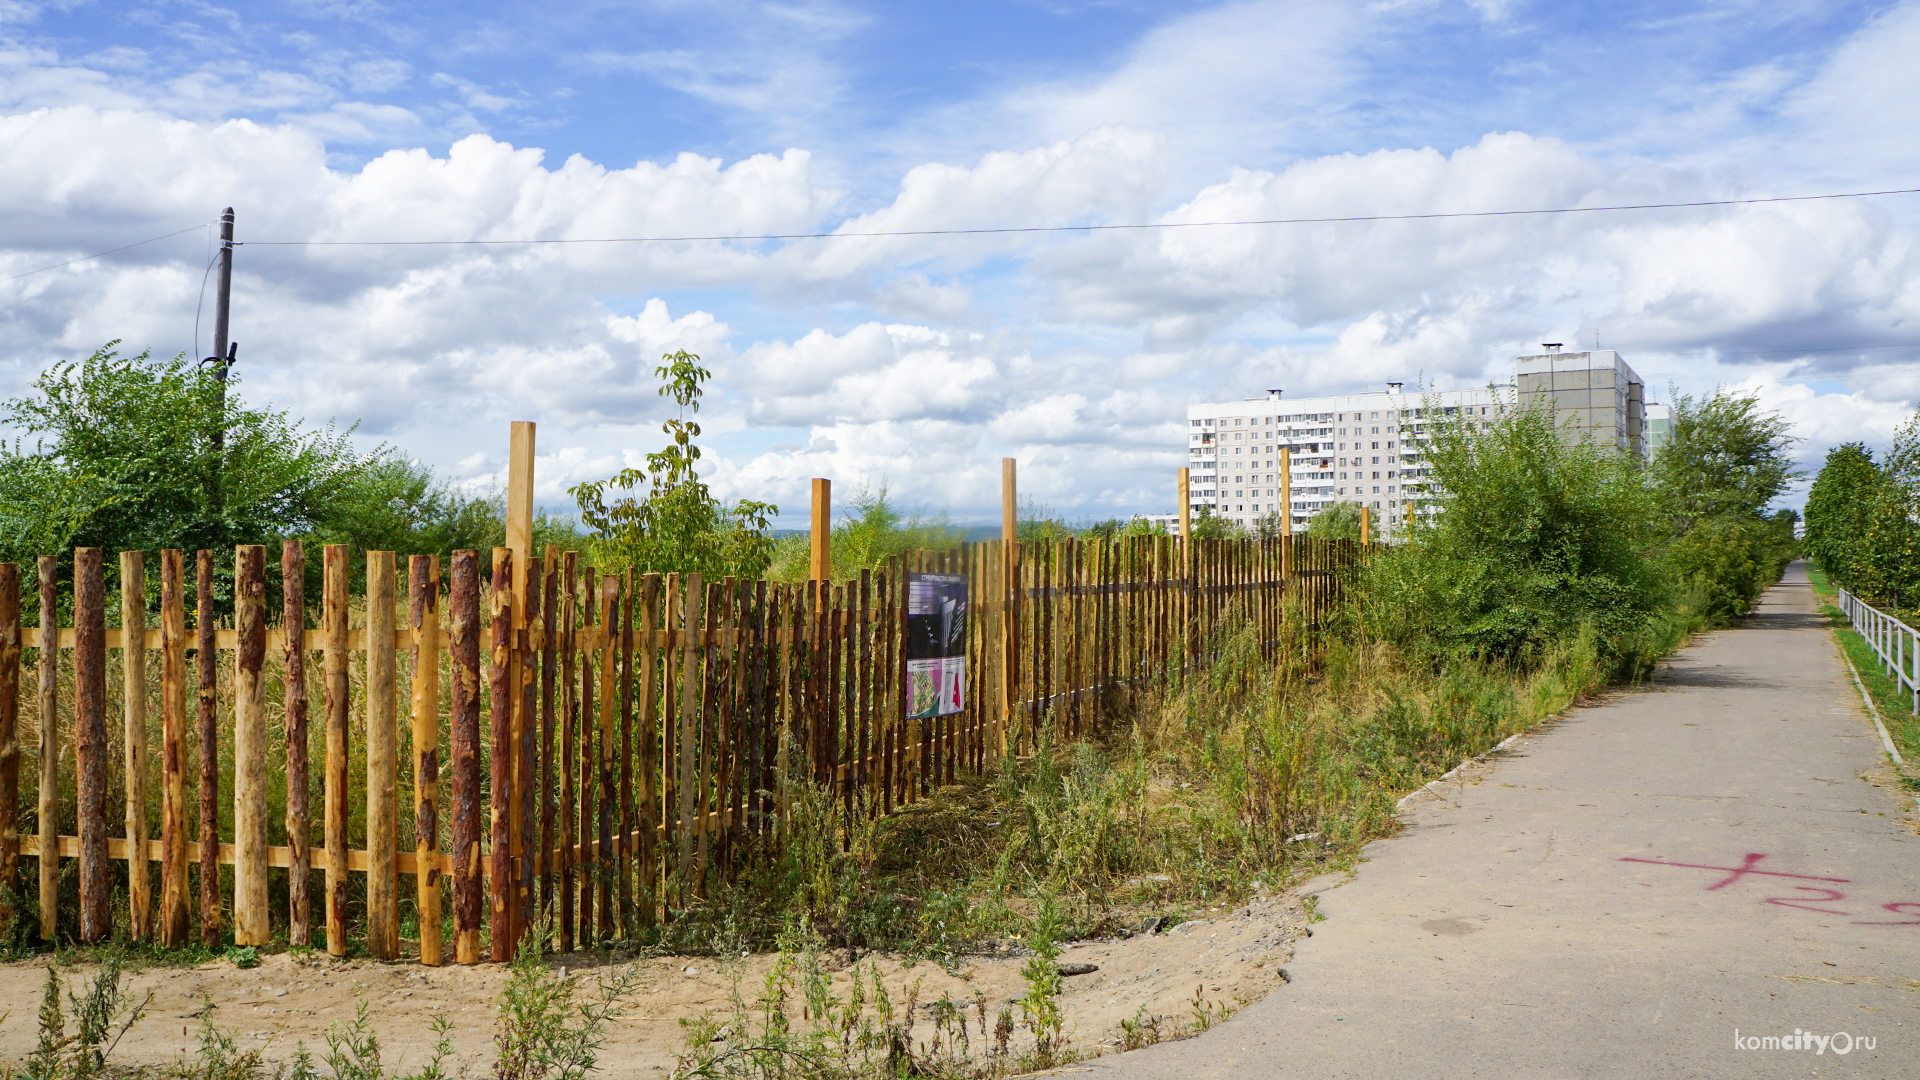 Нью-Комсомольск: На 66-м может появиться пятиэтажный развлекательный центр с подземной парковкой, но это не точно